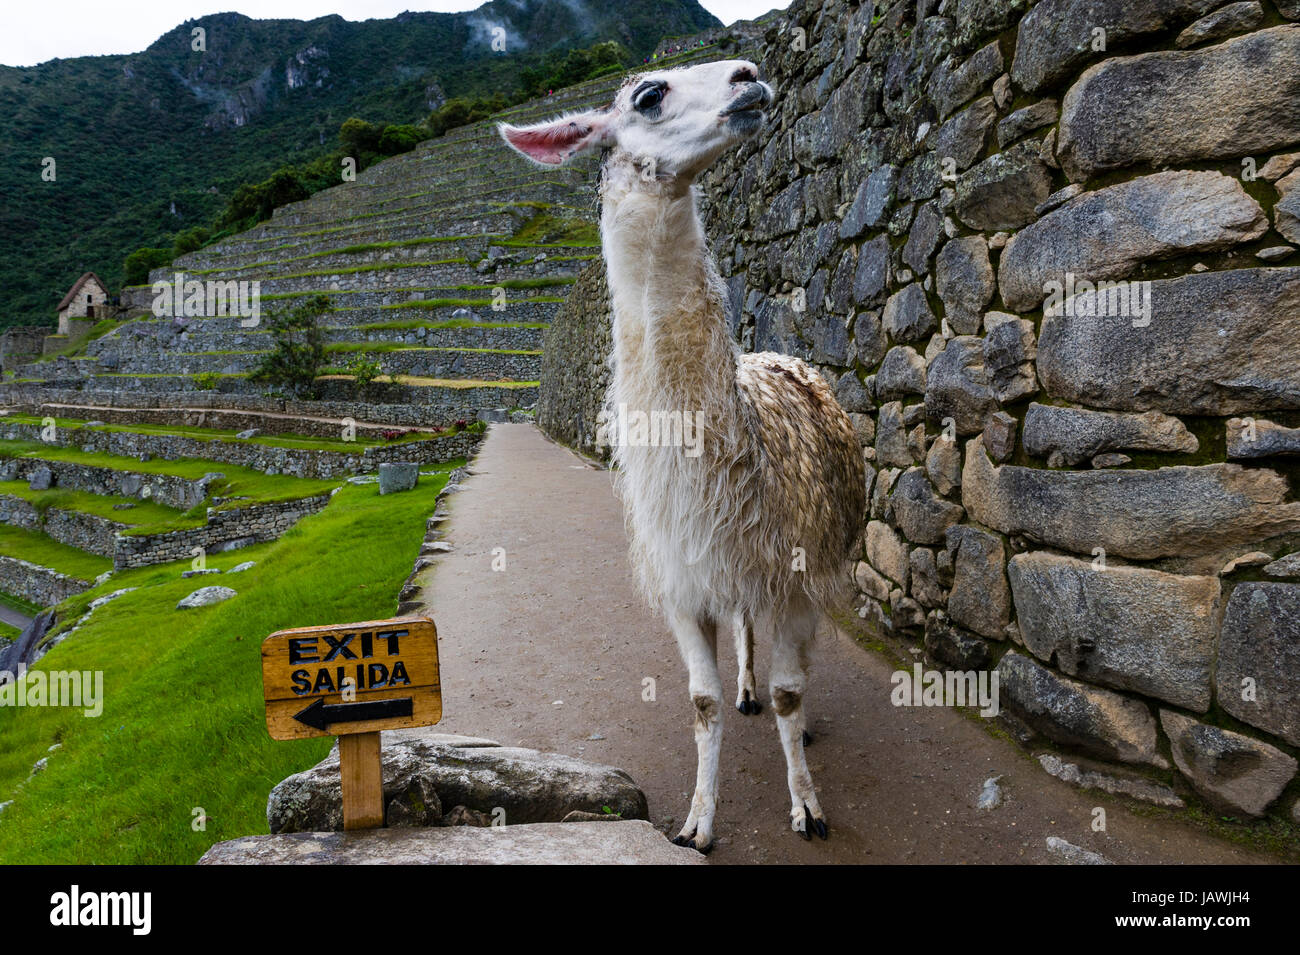 Ein Lama erkundet die alten Inka-Ruinen von Macchu Picchu neben einem Ausgangsschild. Stockfoto